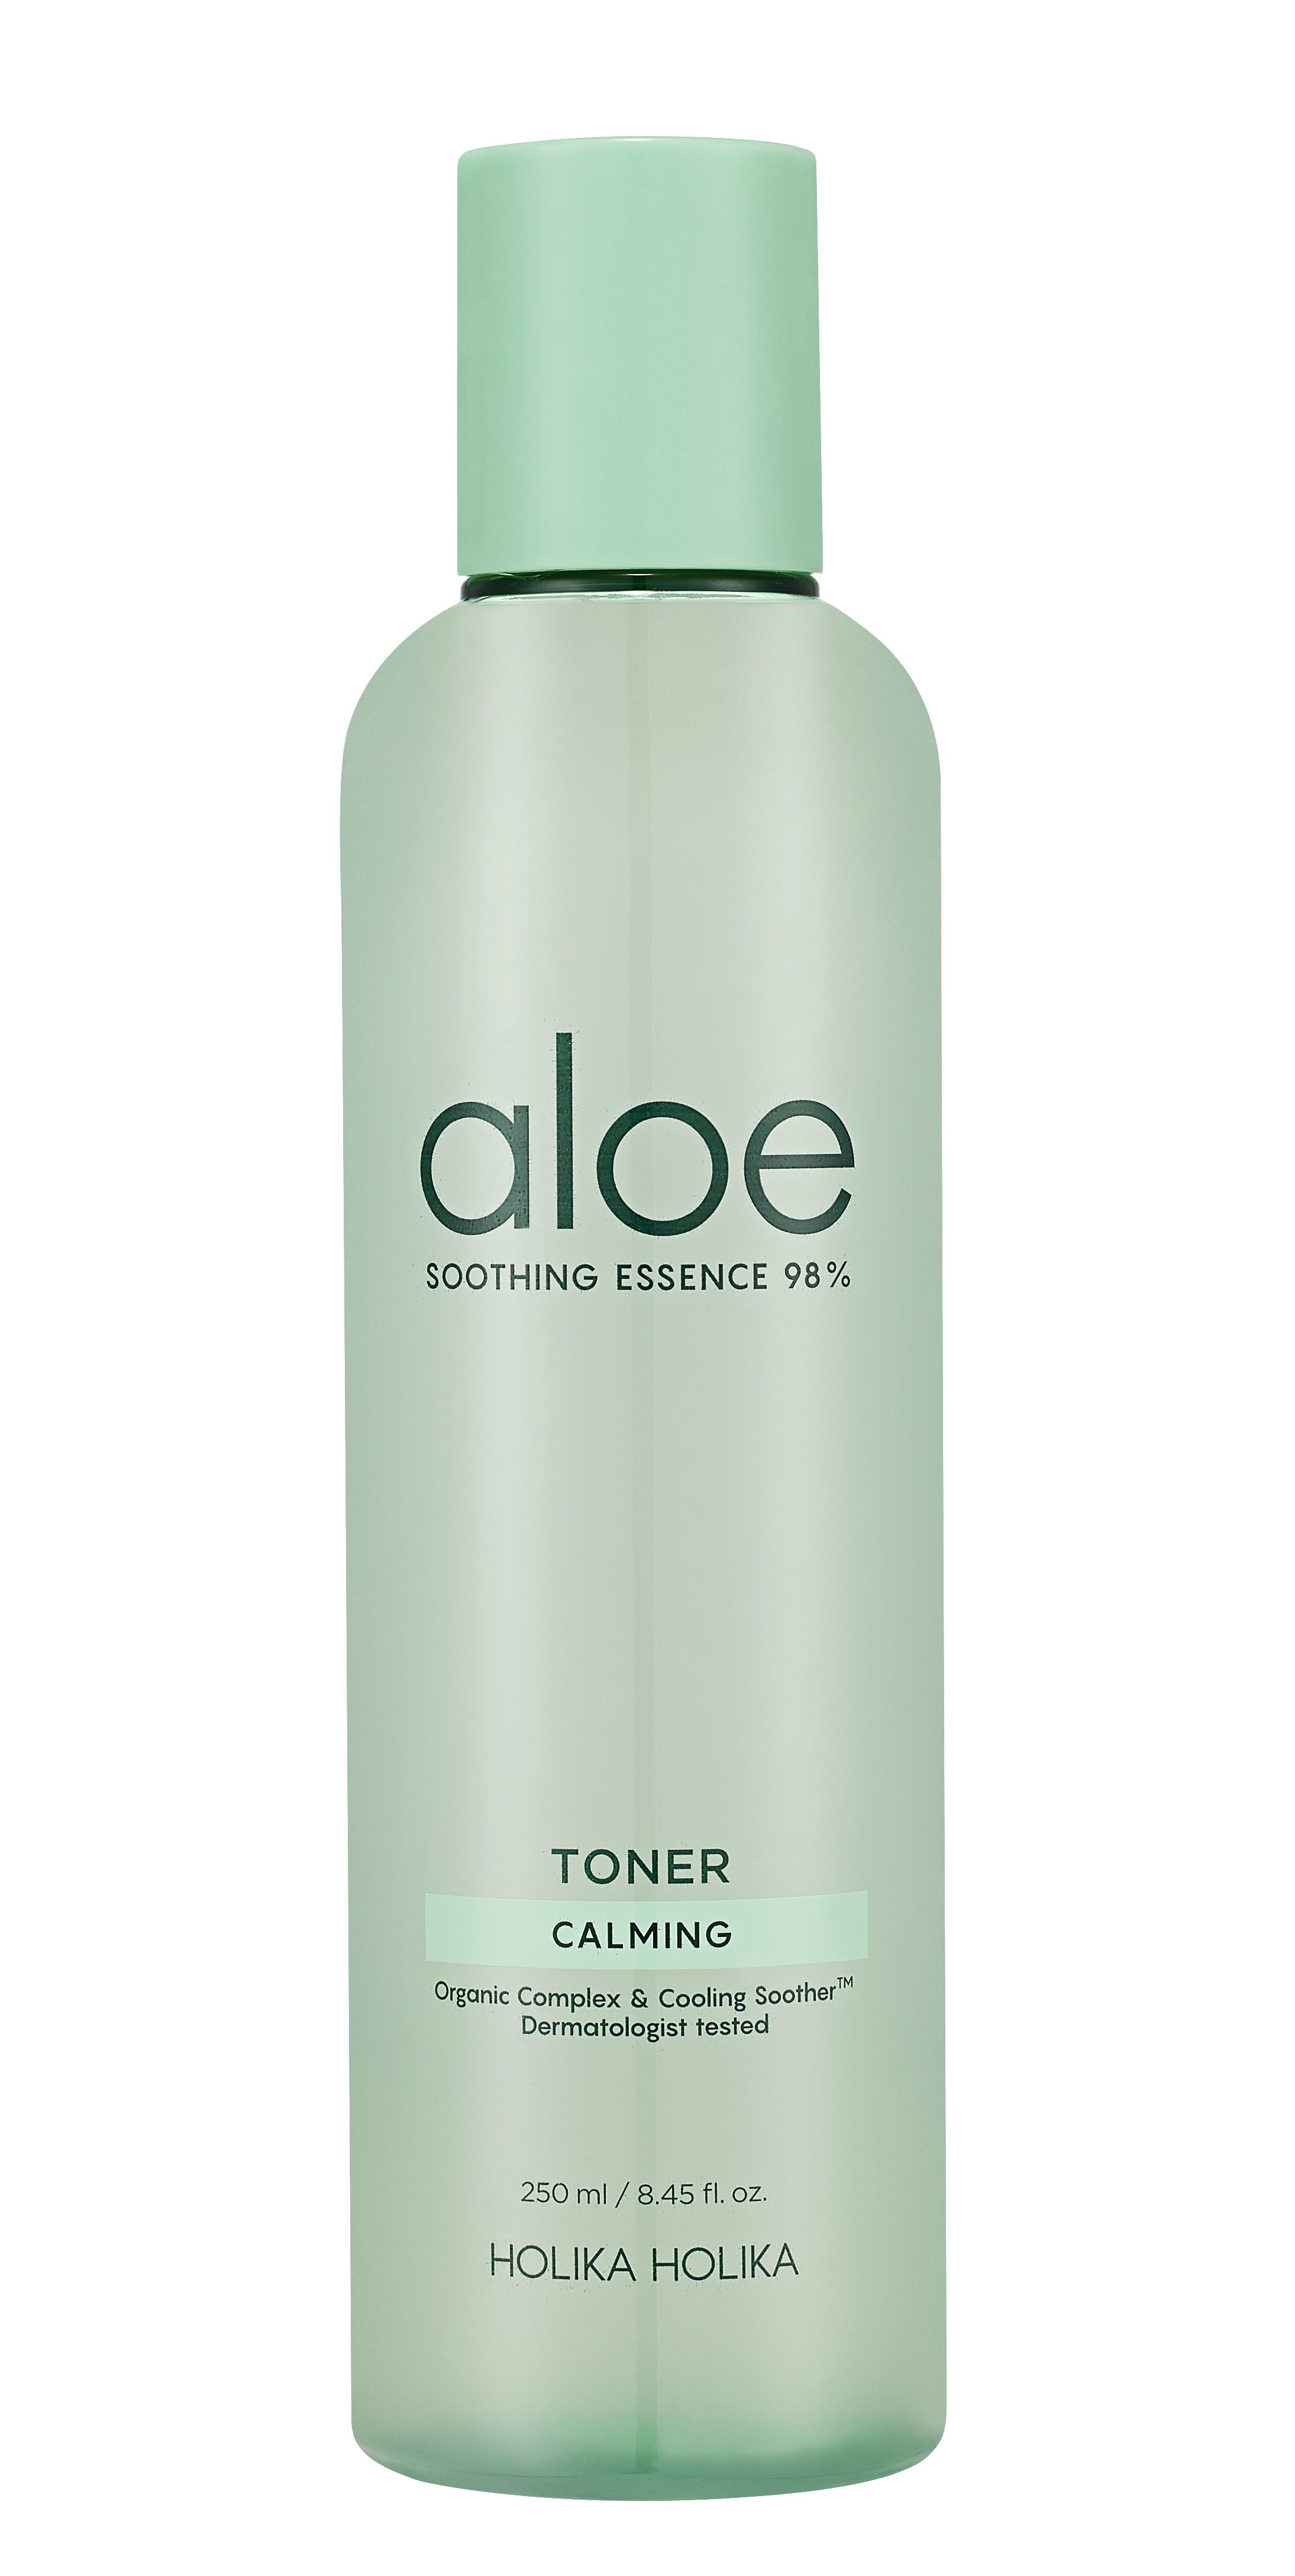 HOLIKA HOLIKA Тонер увлажняющий для лица / Aloe Soothing Essence 98% Toner 250 мл увлажняющий тонер для лица aloe soothing essence 98%